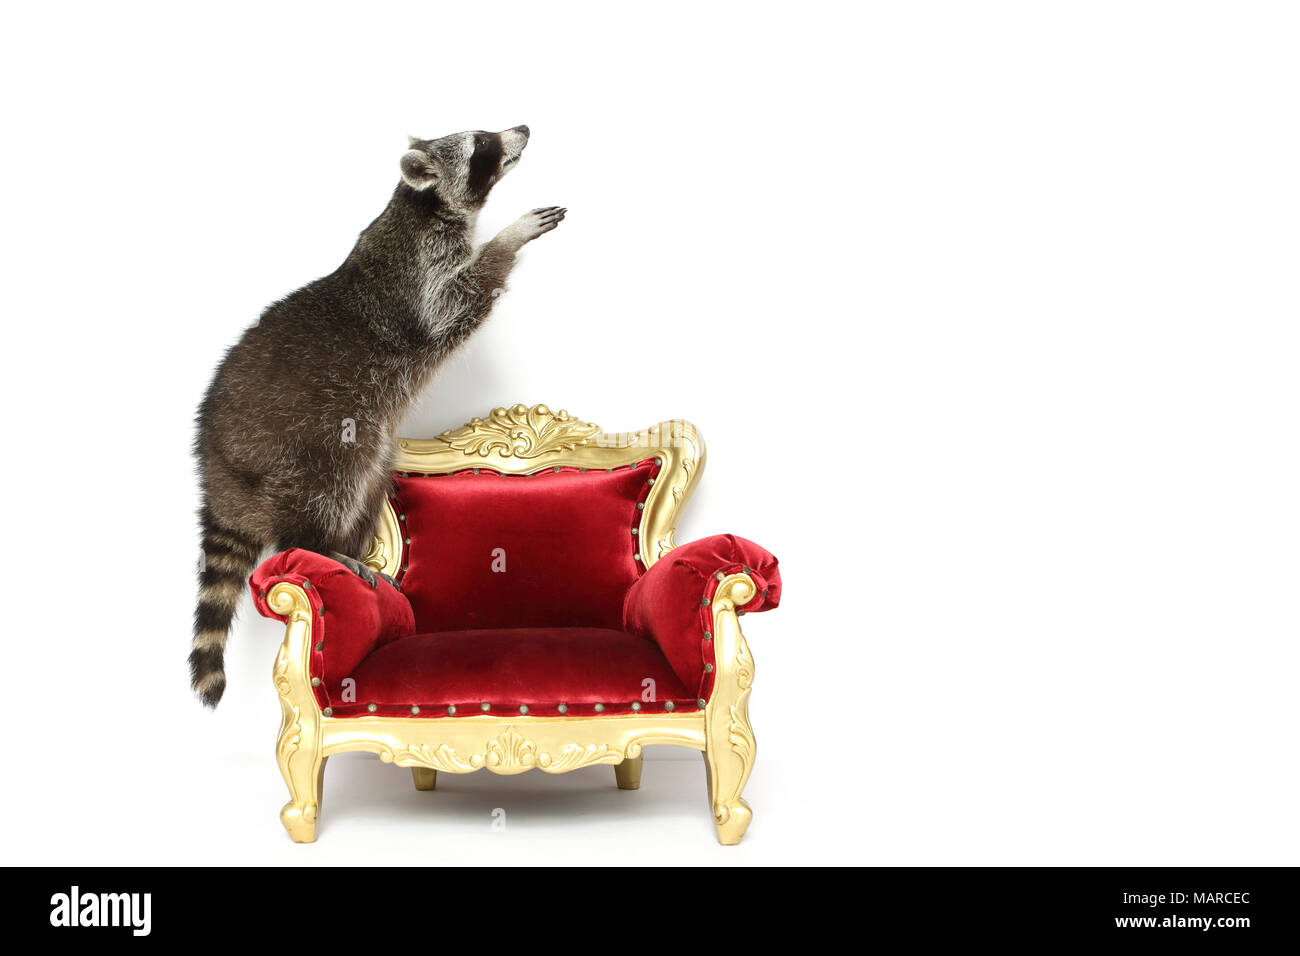 Raccoon (Procione lotor). Adulto in piedi su una poltrona in stile barocco. Studio Immagine contro uno sfondo bianco. Germania Foto Stock